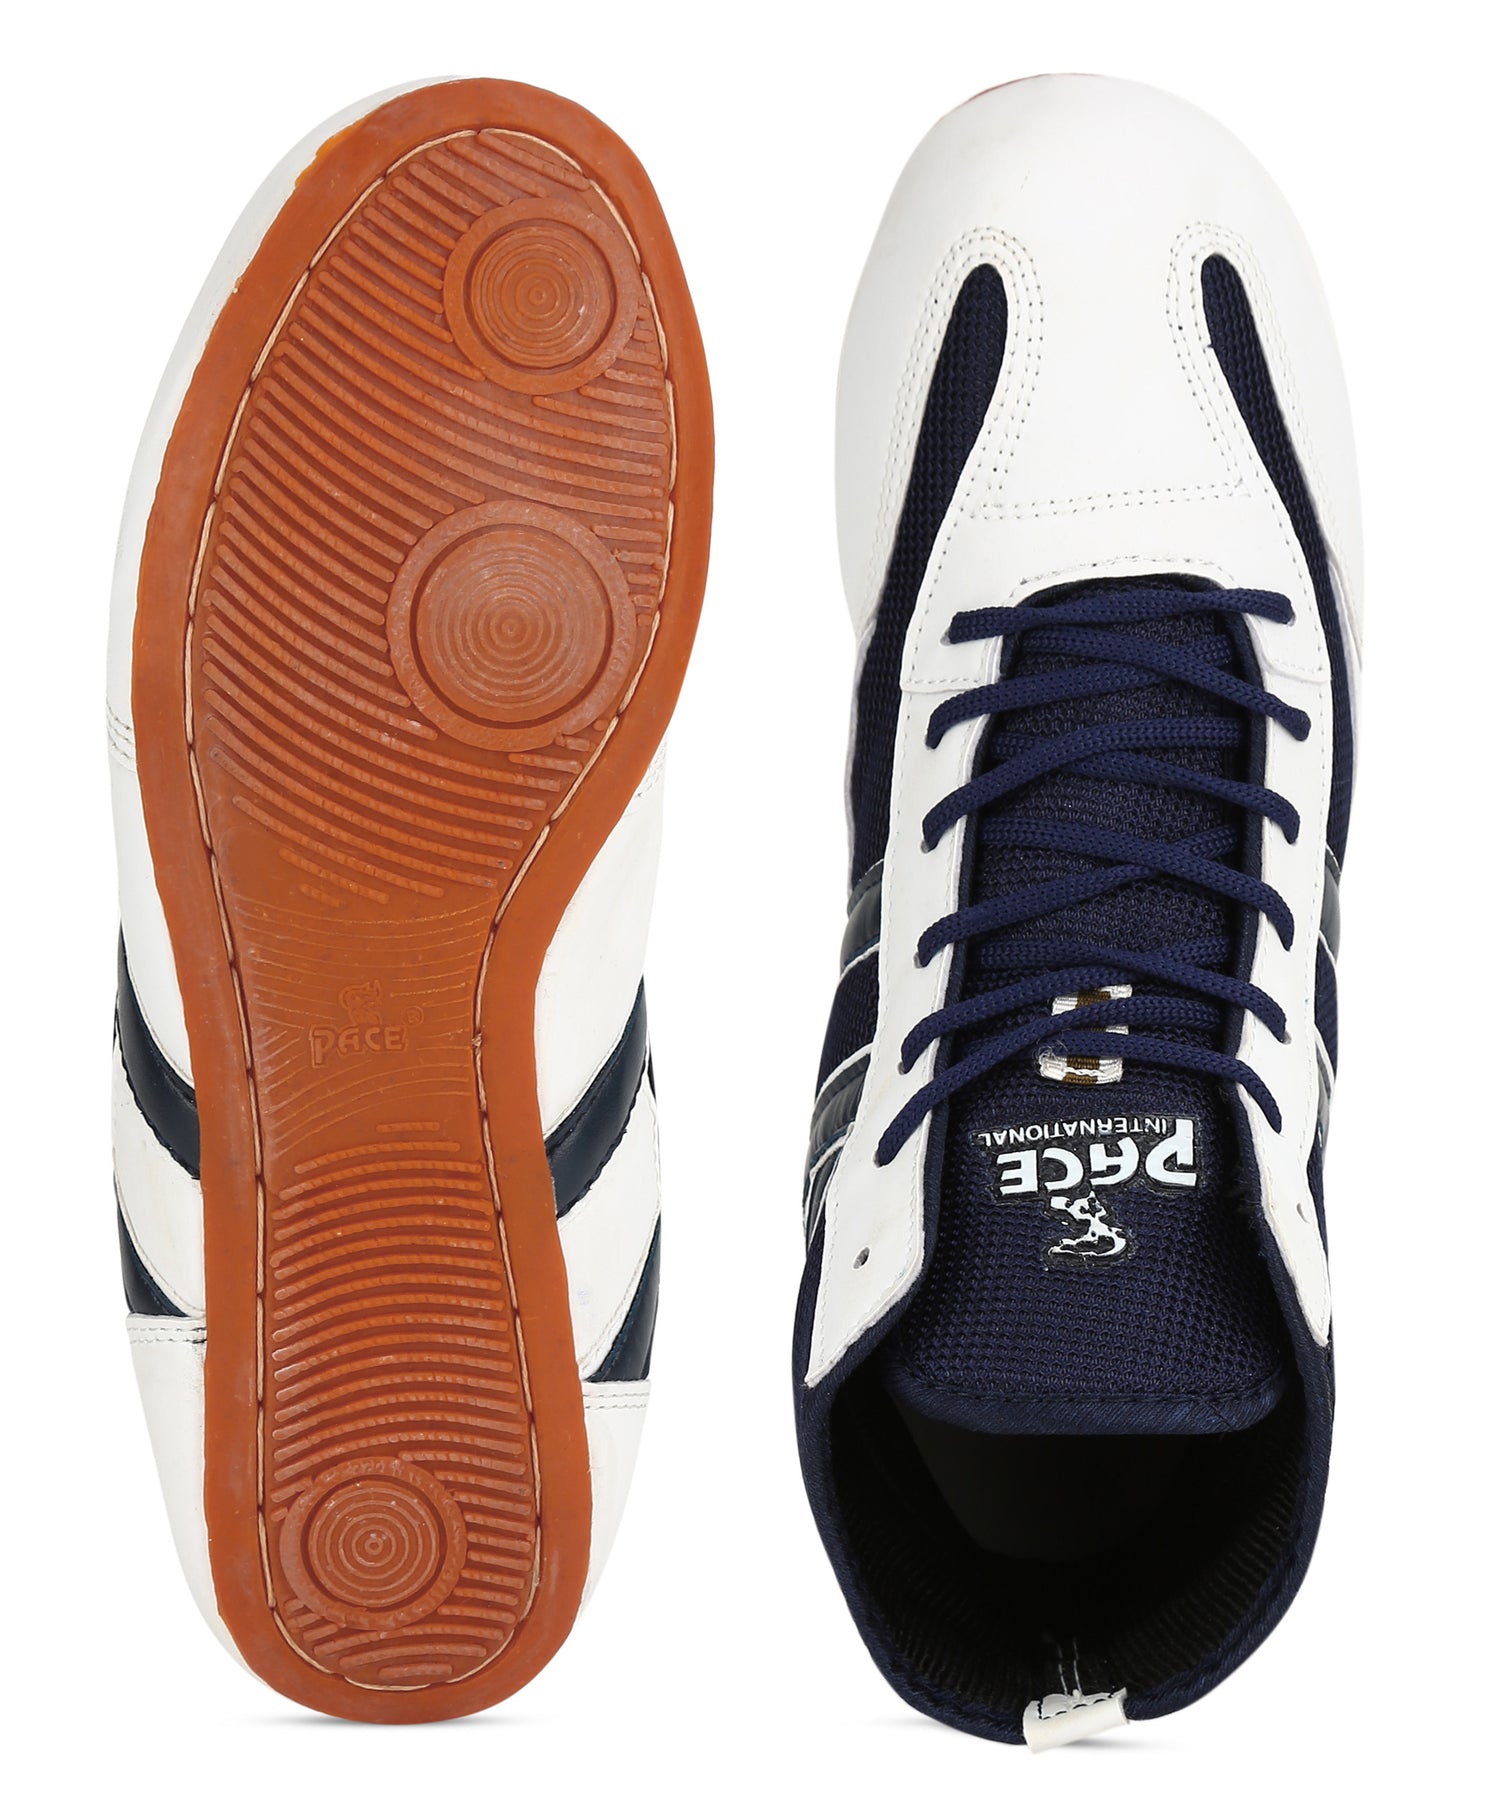 RXN Wrestling Shoes Kabadi Shoe Sports Wrestling shoes, Size: 1-14 at Rs  1500/pair in Jalandhar